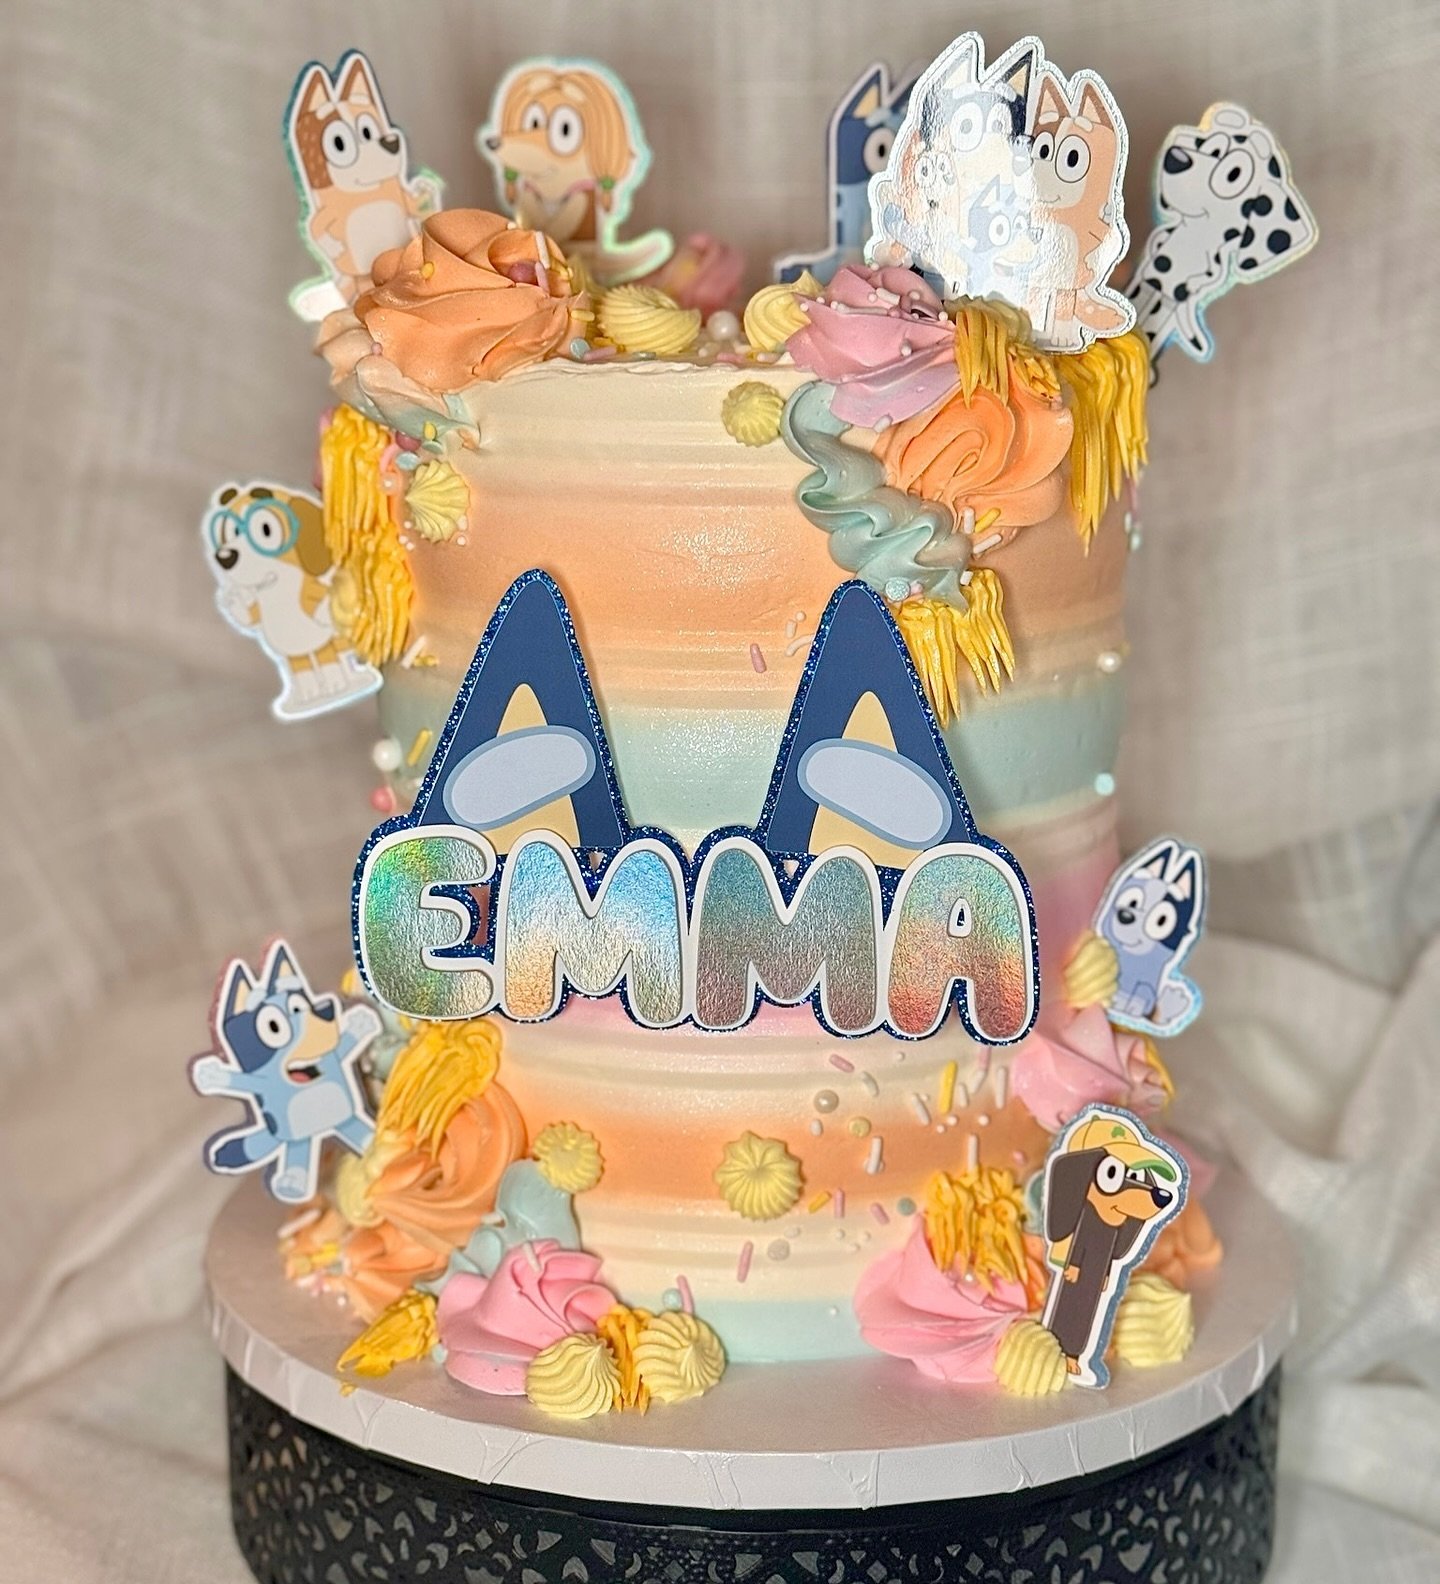 A Bluey birthday bash!🐾🩵
&bull;
&bull;
&bull;
#thesilvawhisk #cakes #baking #cake #cakedecorating #foodie #cakegoals #dessert #instacake #baker #travelingbaker #cakedesign #cakesofinsta #marylandbaker #dmvbaker #cakesofig #dcbaker #dmvcakes #wilton